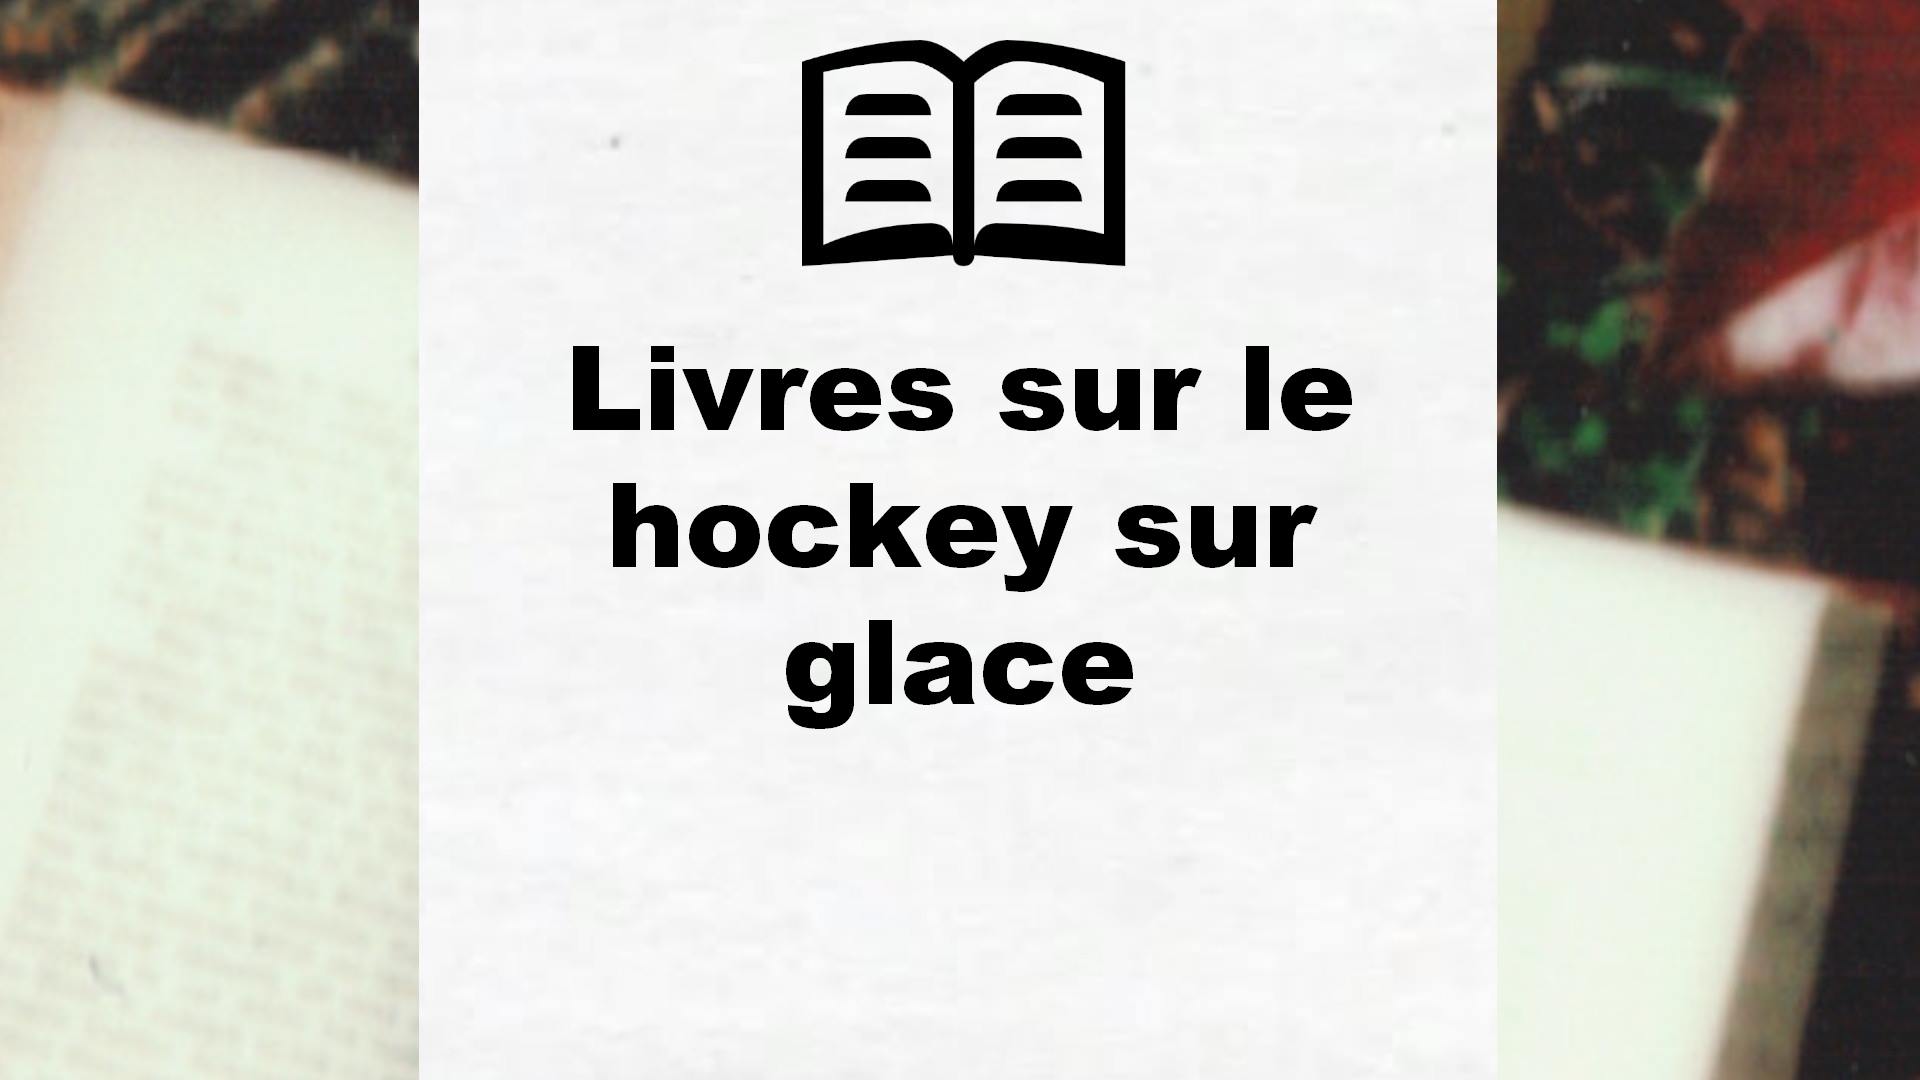 Livres sur le hockey sur glace